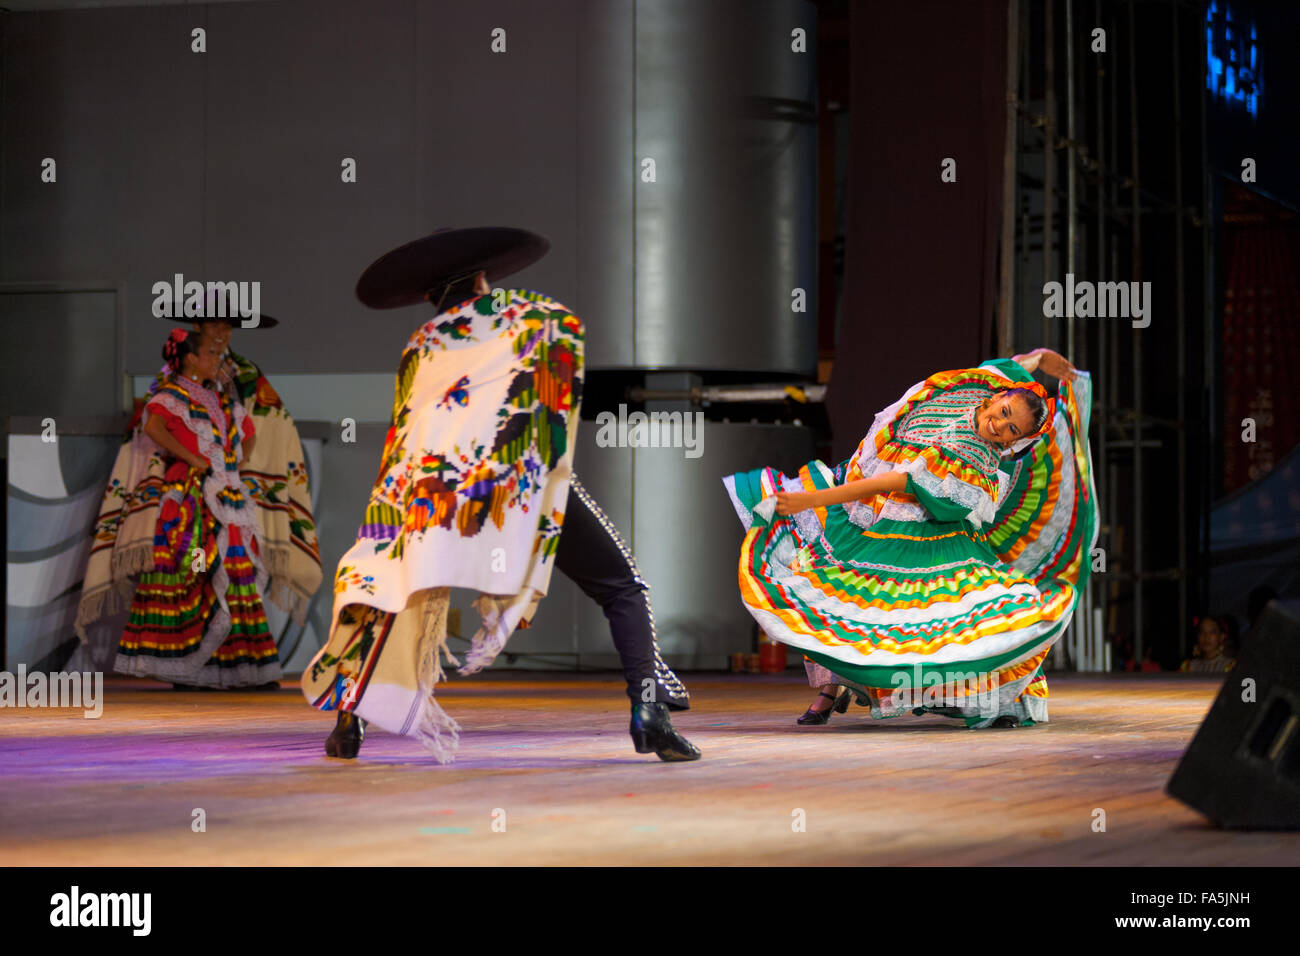 Danseuse portant robe vert coloré, se pencher sur le côté du corps danse avec partenaire masculin au cap au cours d'une danse mexicaine Banque D'Images